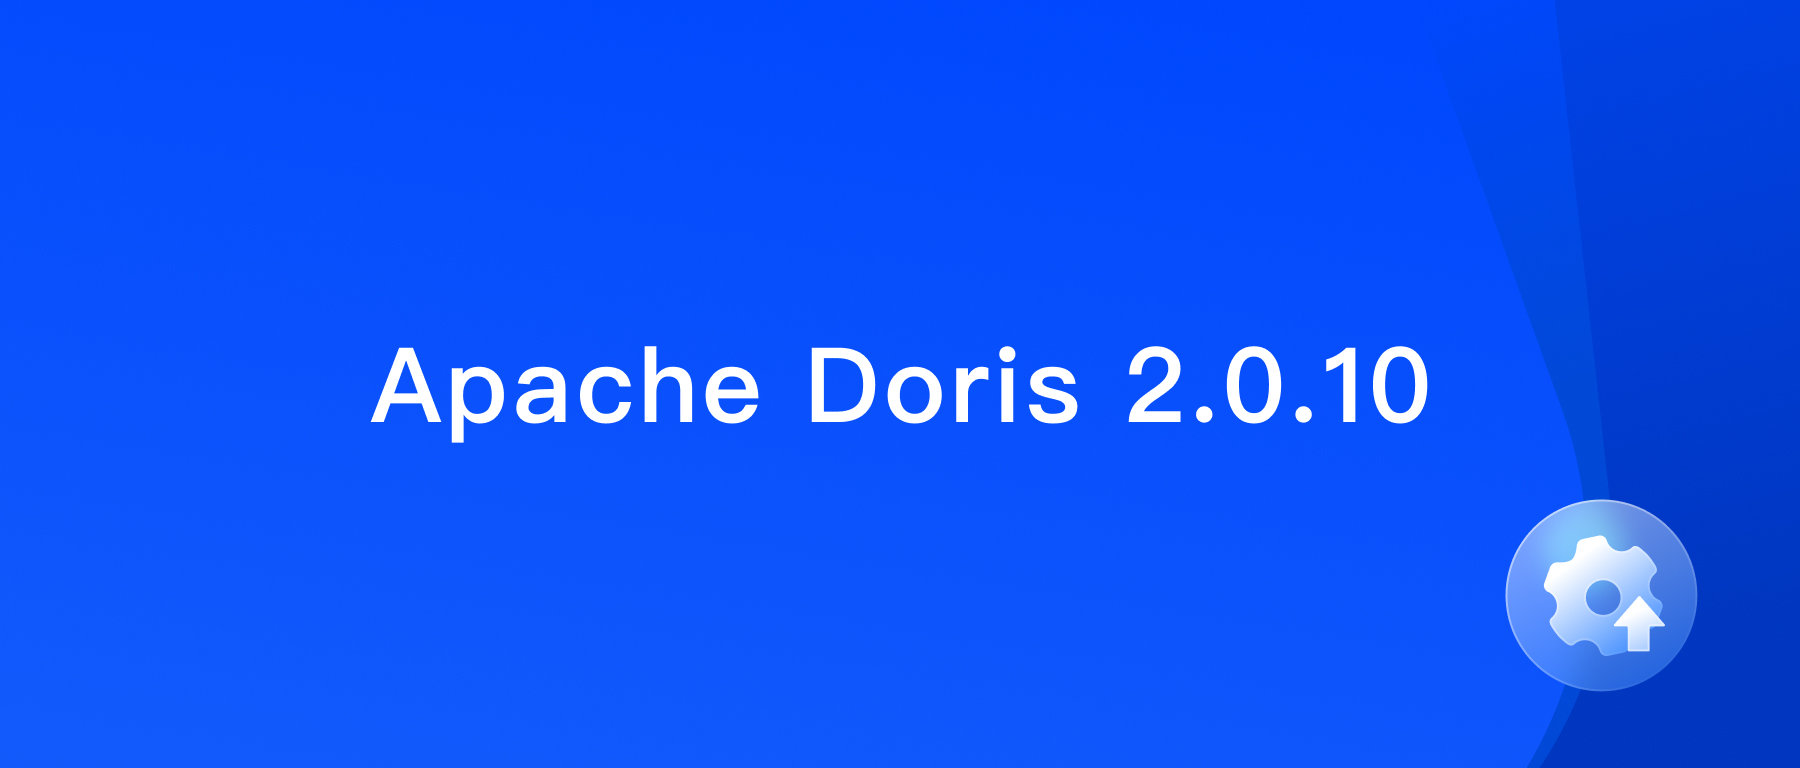 Apache Doris version 2.0.10 has been released